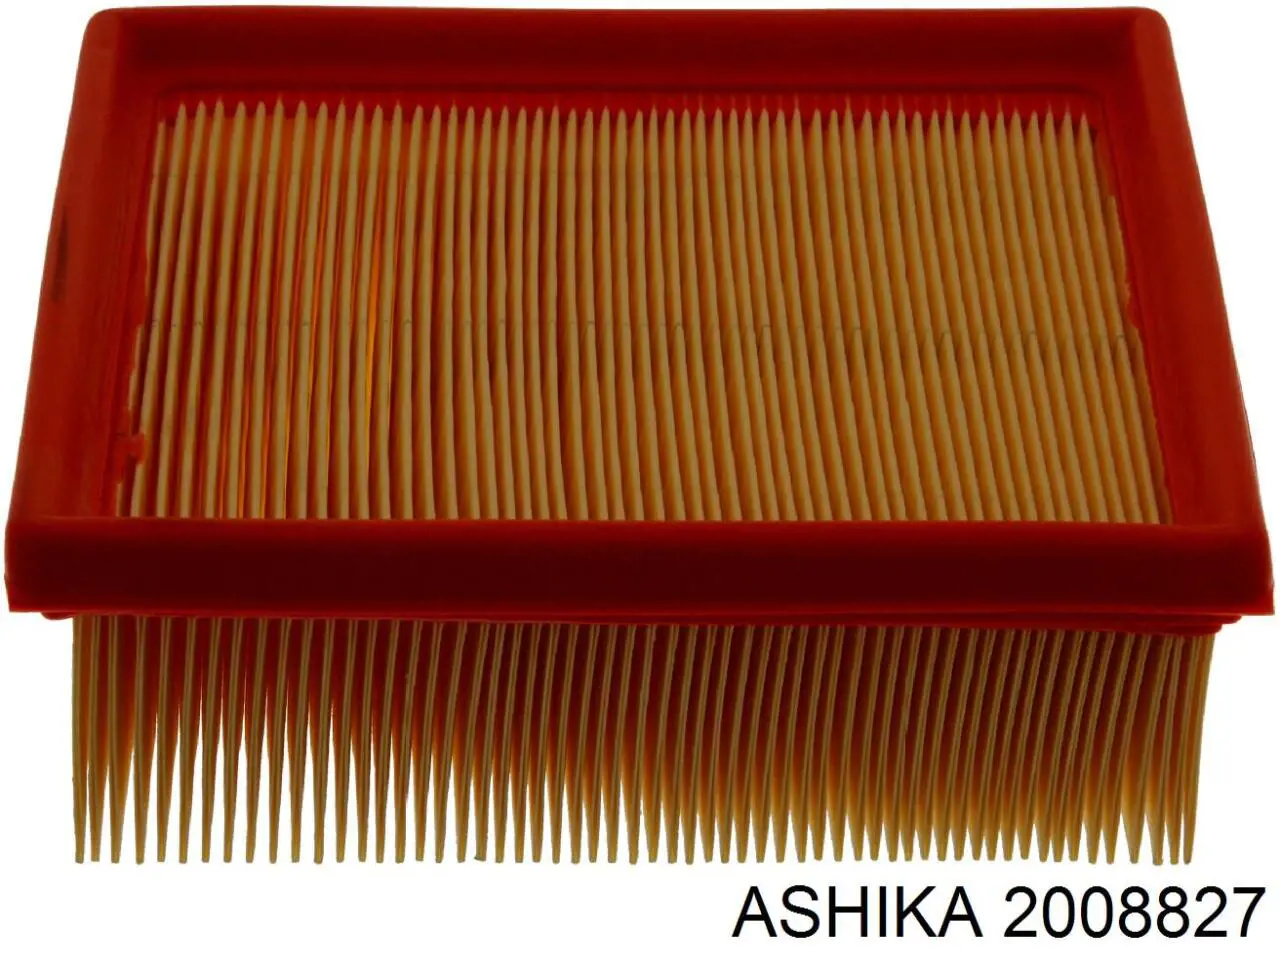 20-08-827 Ashika filtro de aire